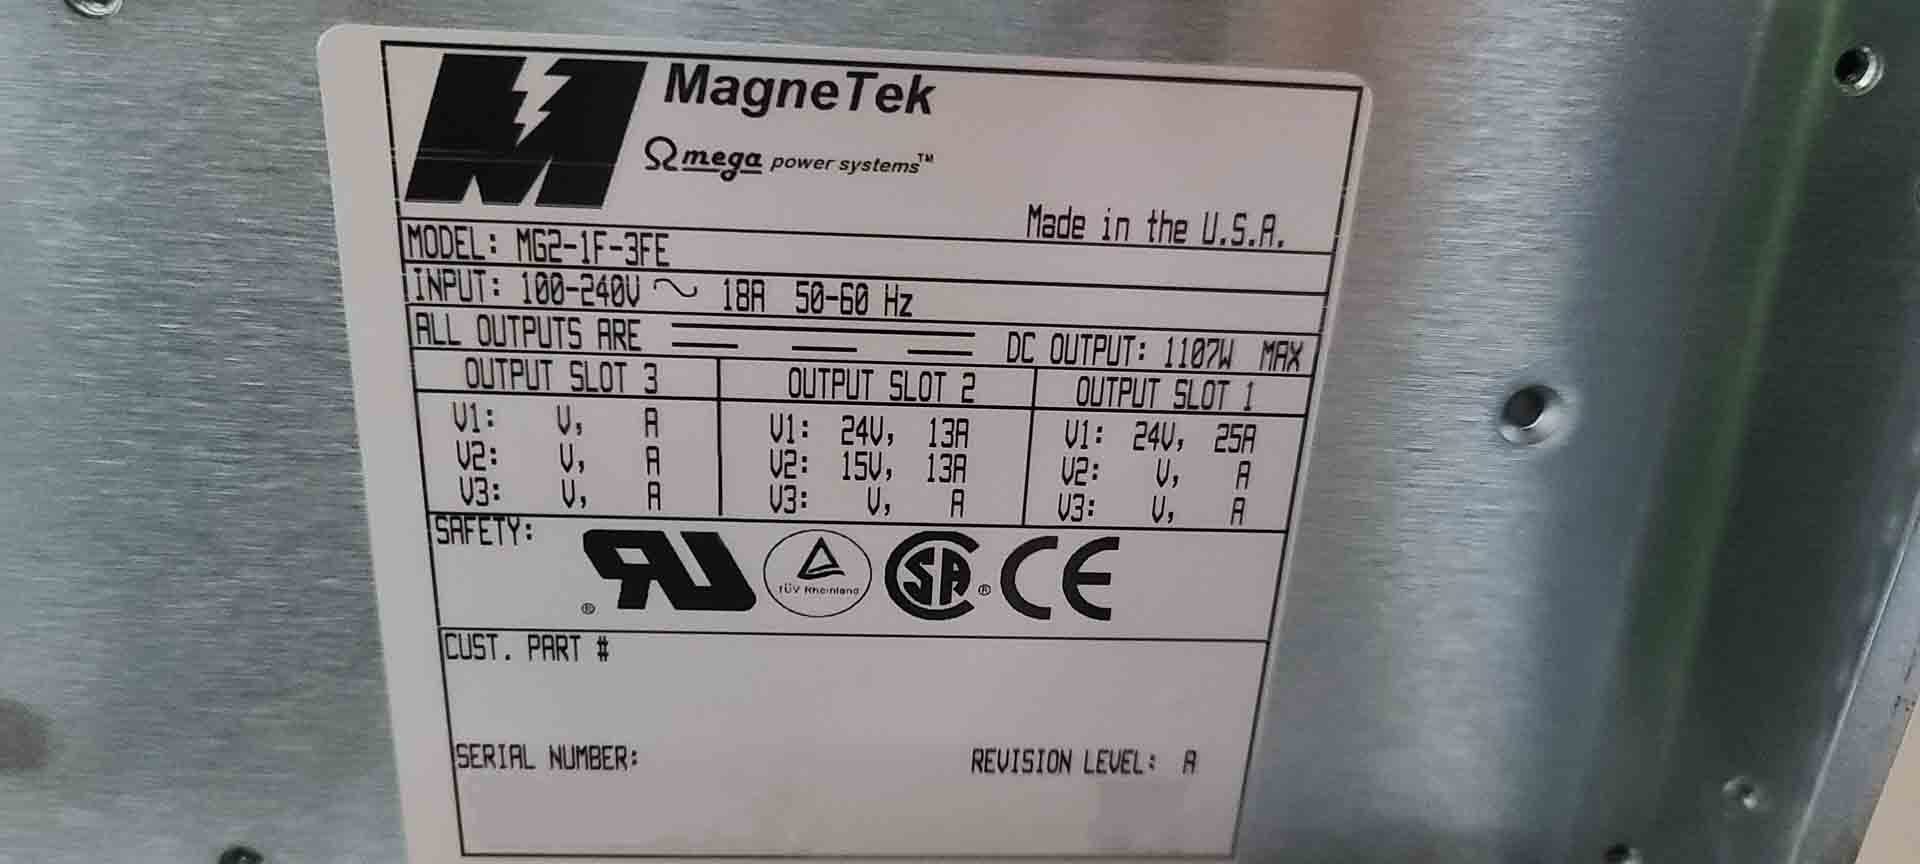 Foto Verwendet MAGNETEK MG2-1F-3FE Zum Verkauf